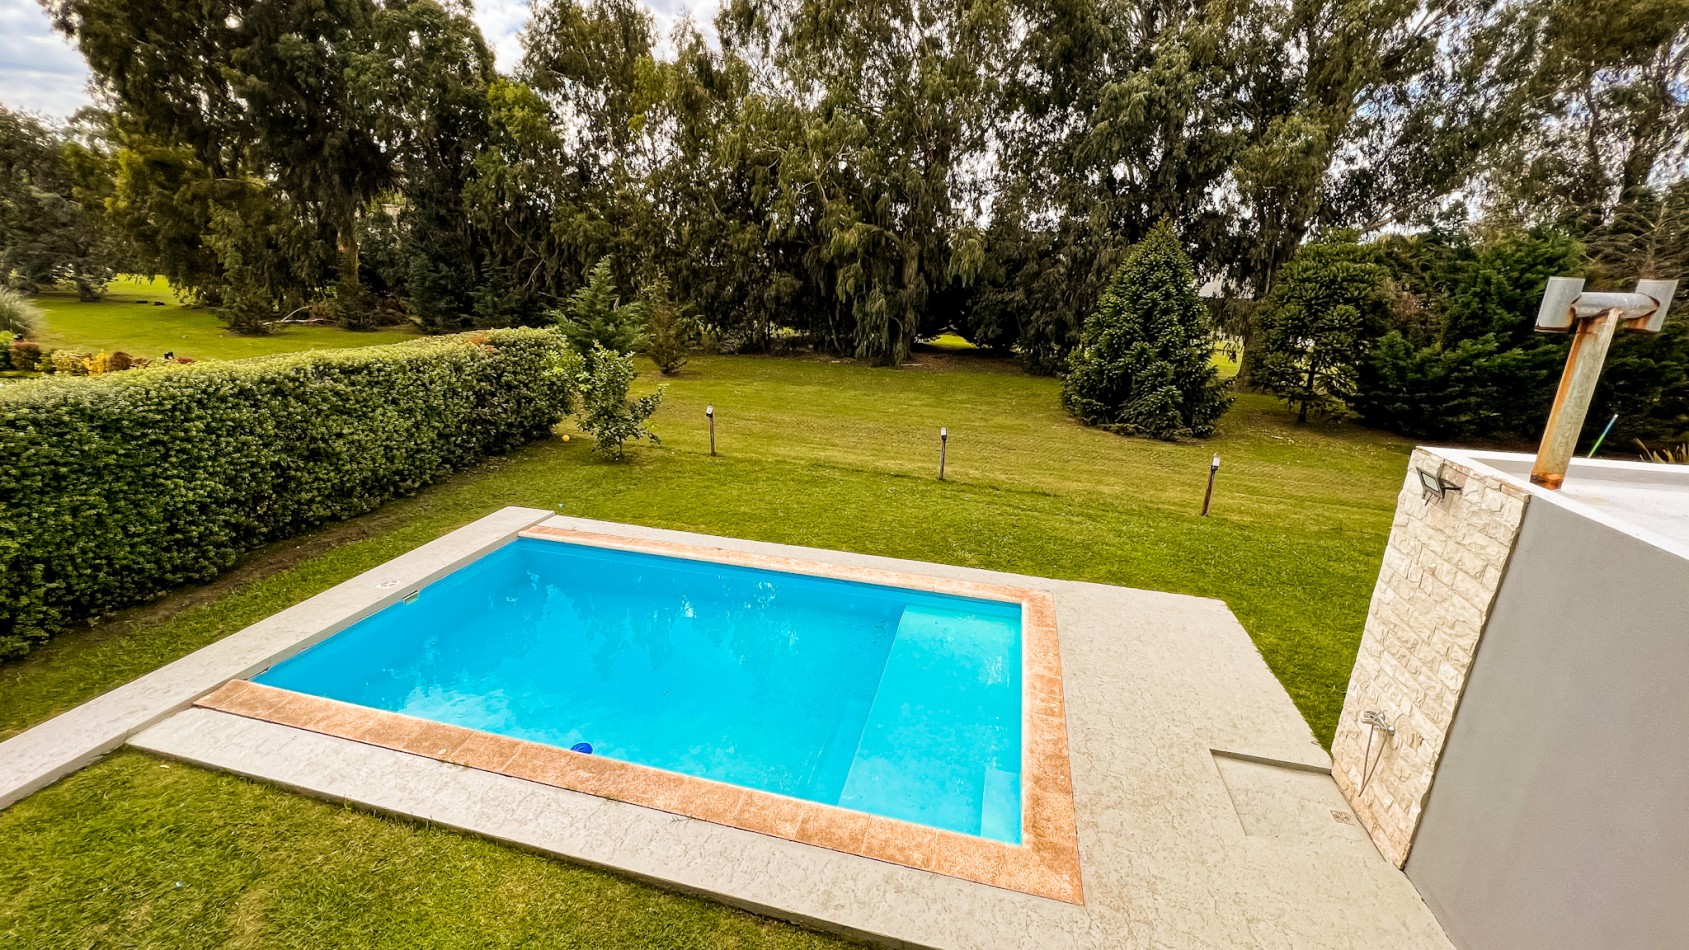 Venta Casa 4 ambientes Rumenco con piscina climatizada